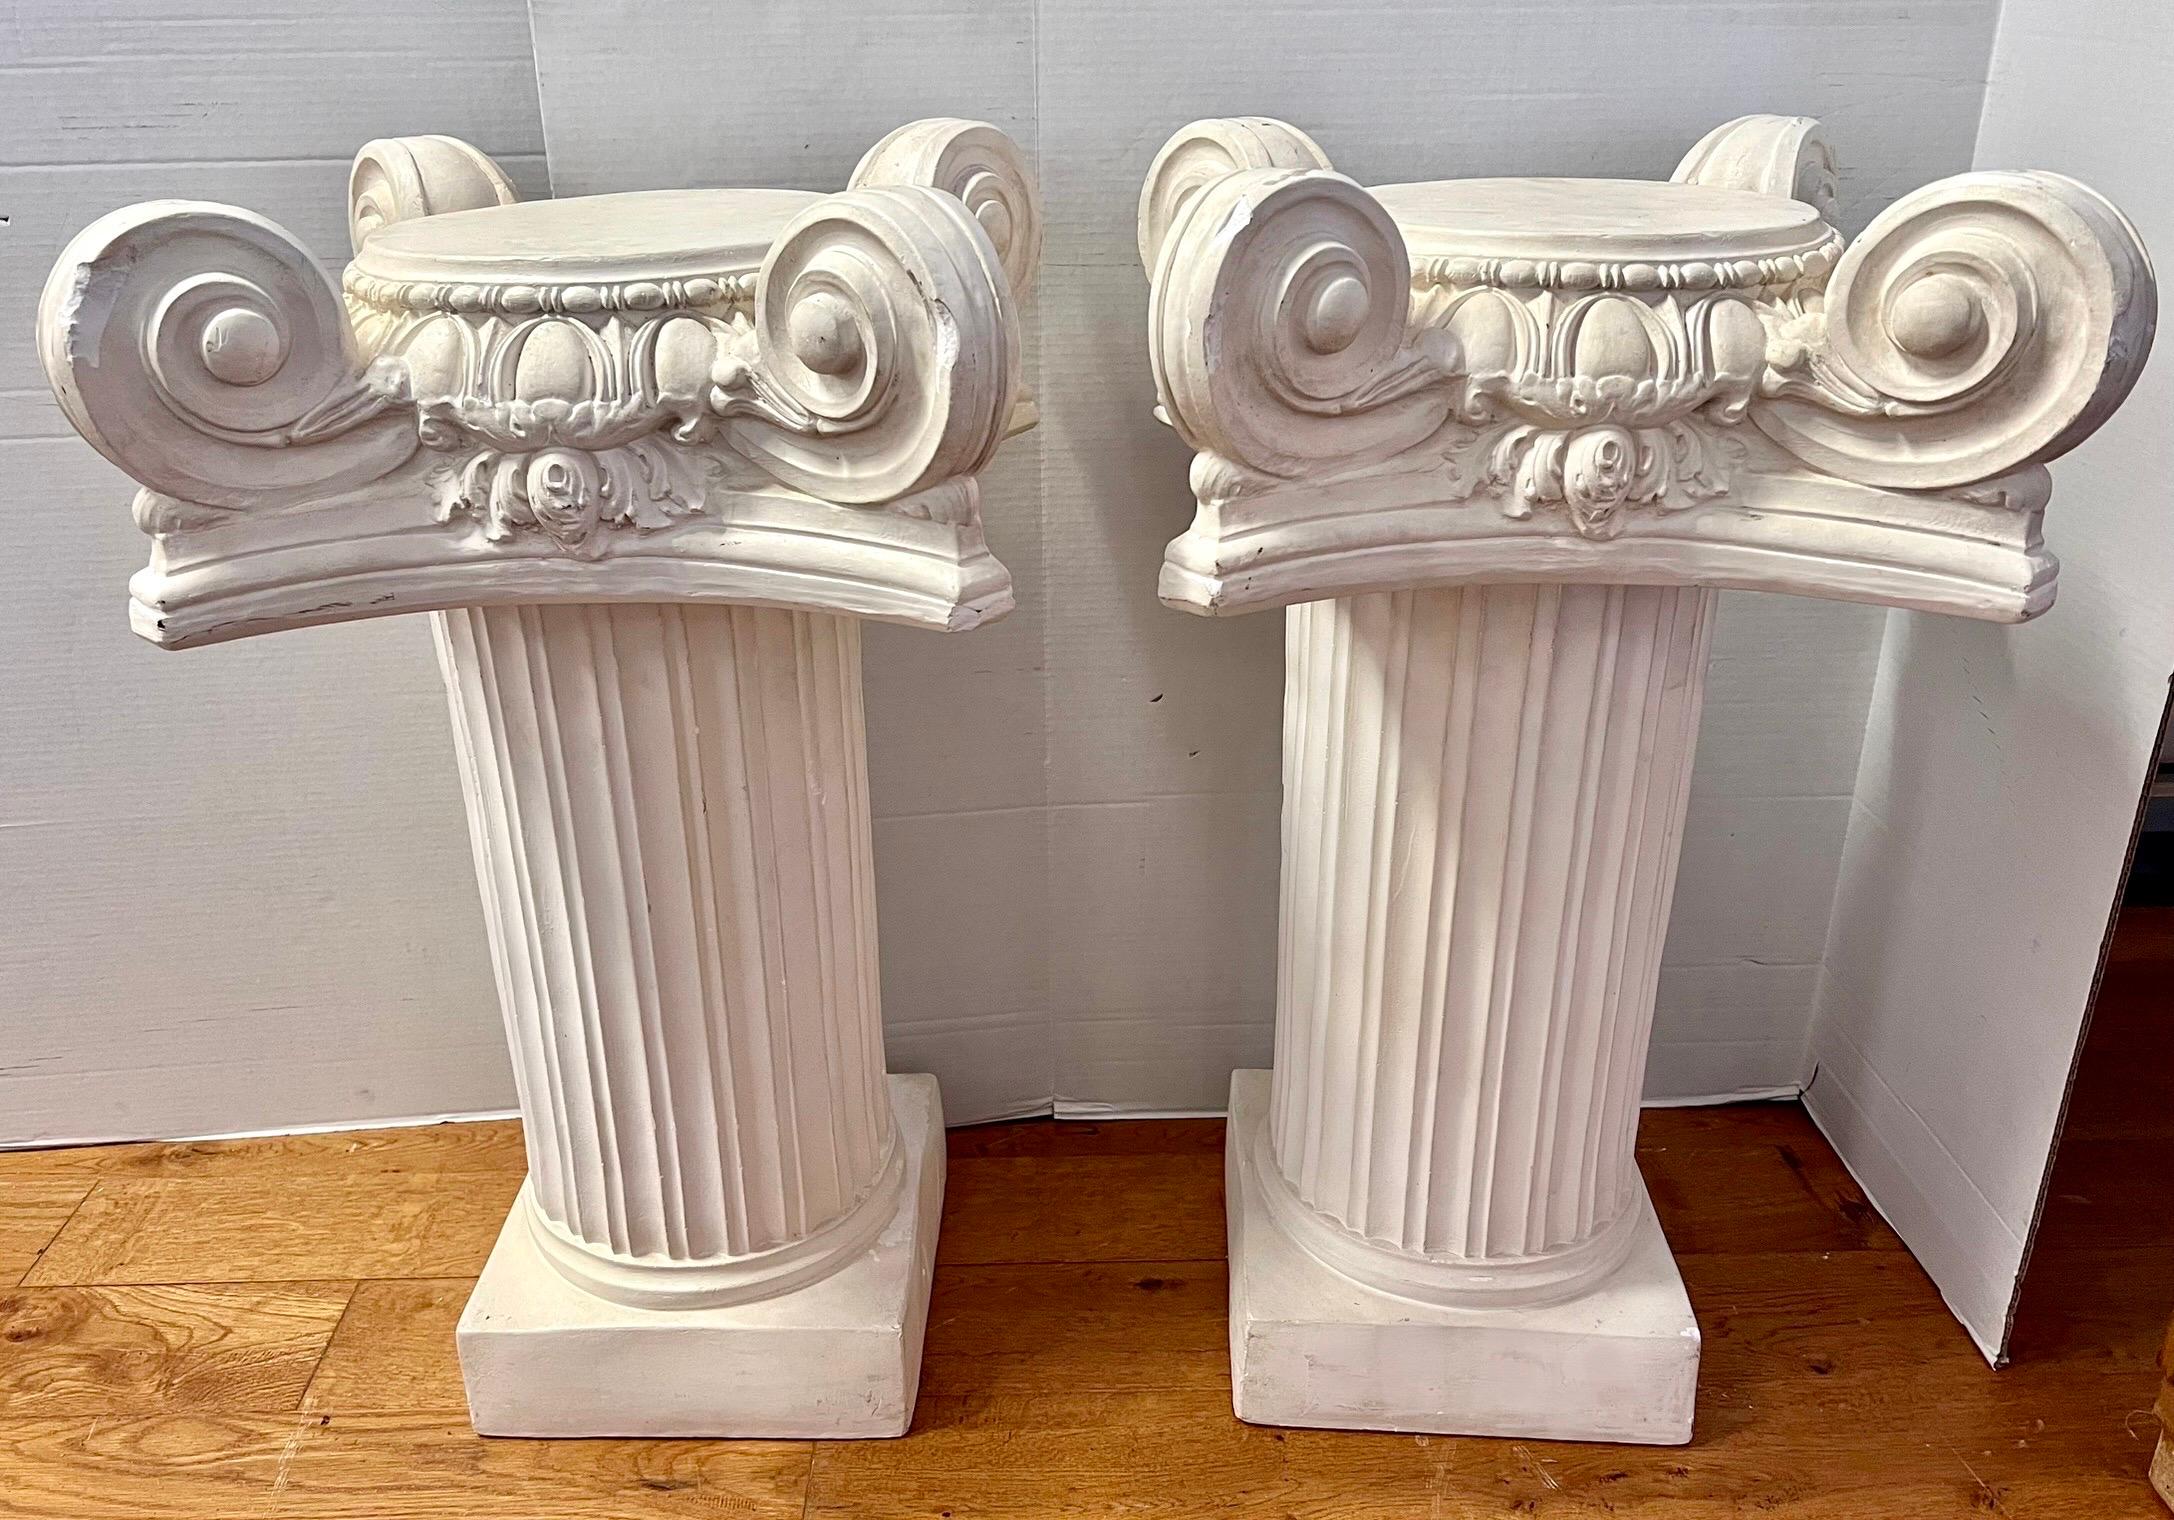 Paire de grandes colonnes iconiques en plâtre lourd ou tables d'appoint  polyvalent.  Chaque colonne est composée de deux pièces dont la partie supérieure se détache pour faciliter les déplacements.